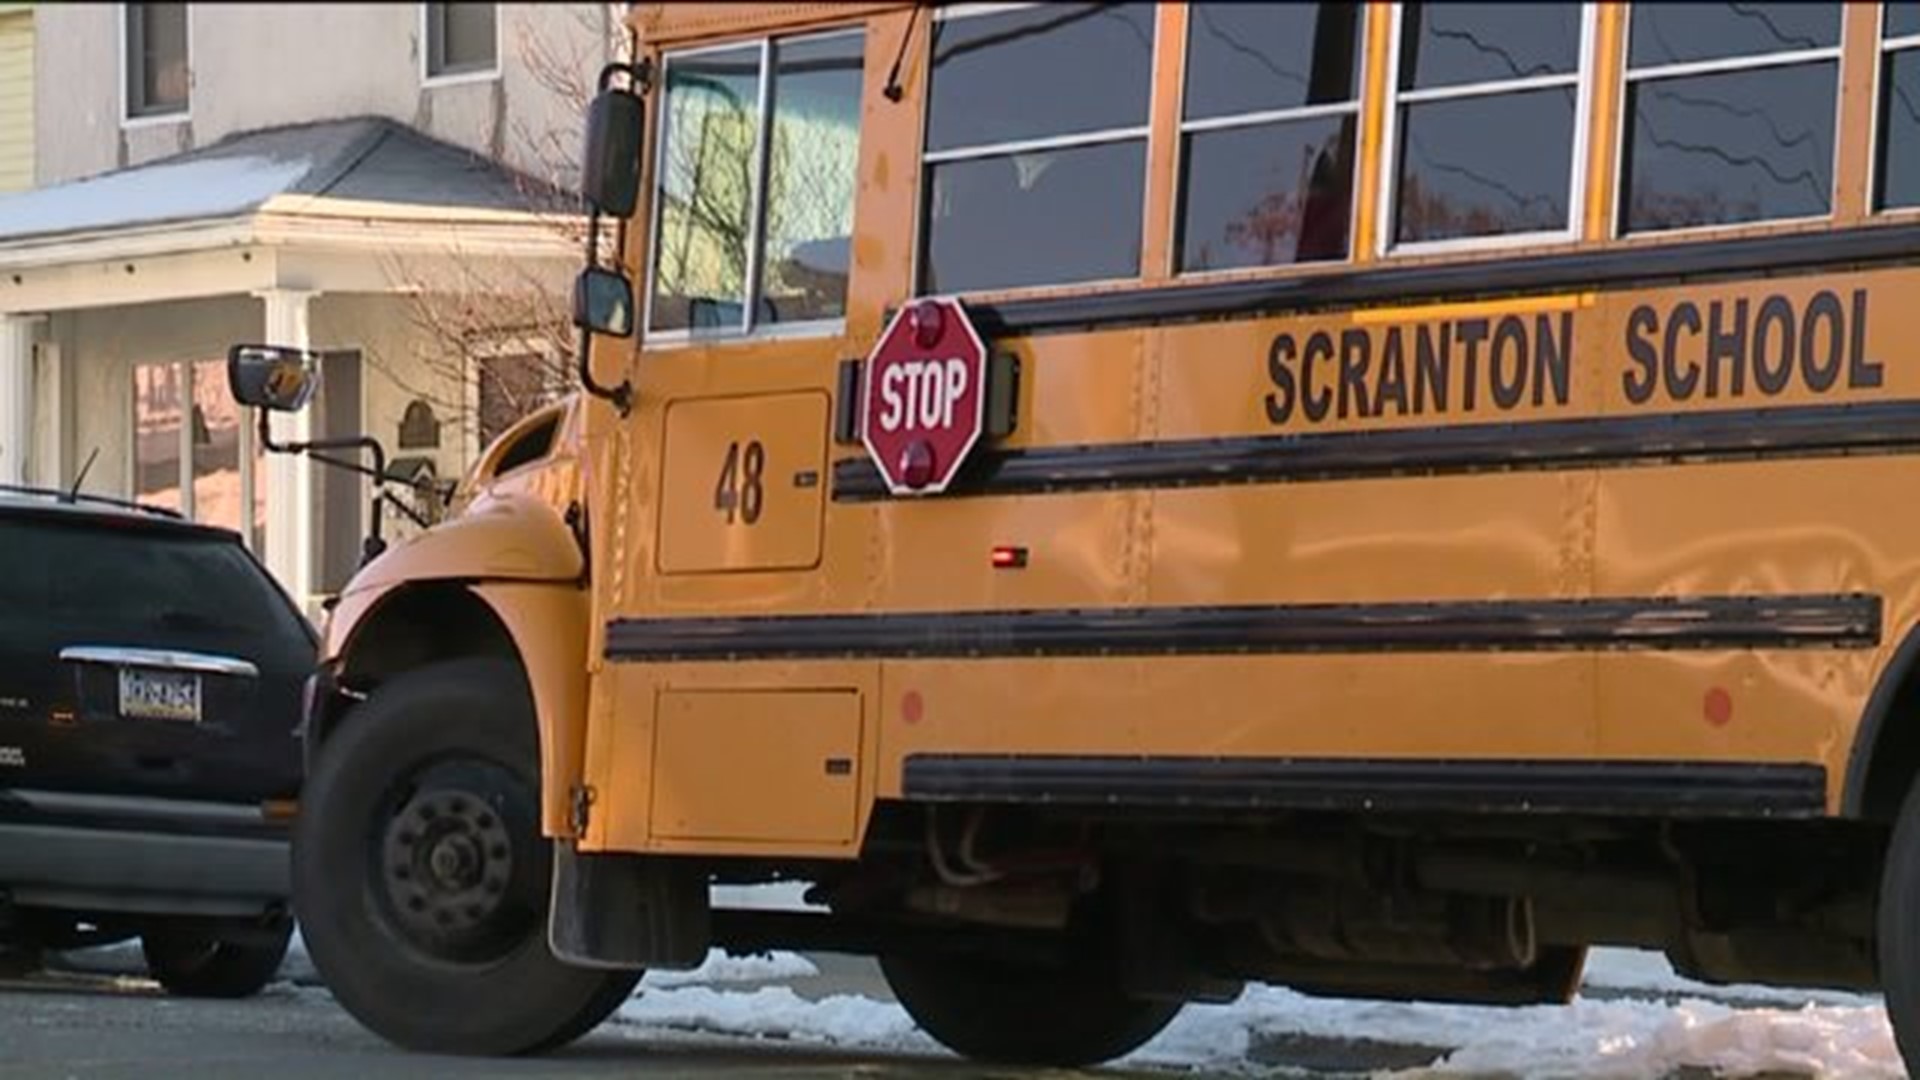 School Bus, Car Crash in Scranton